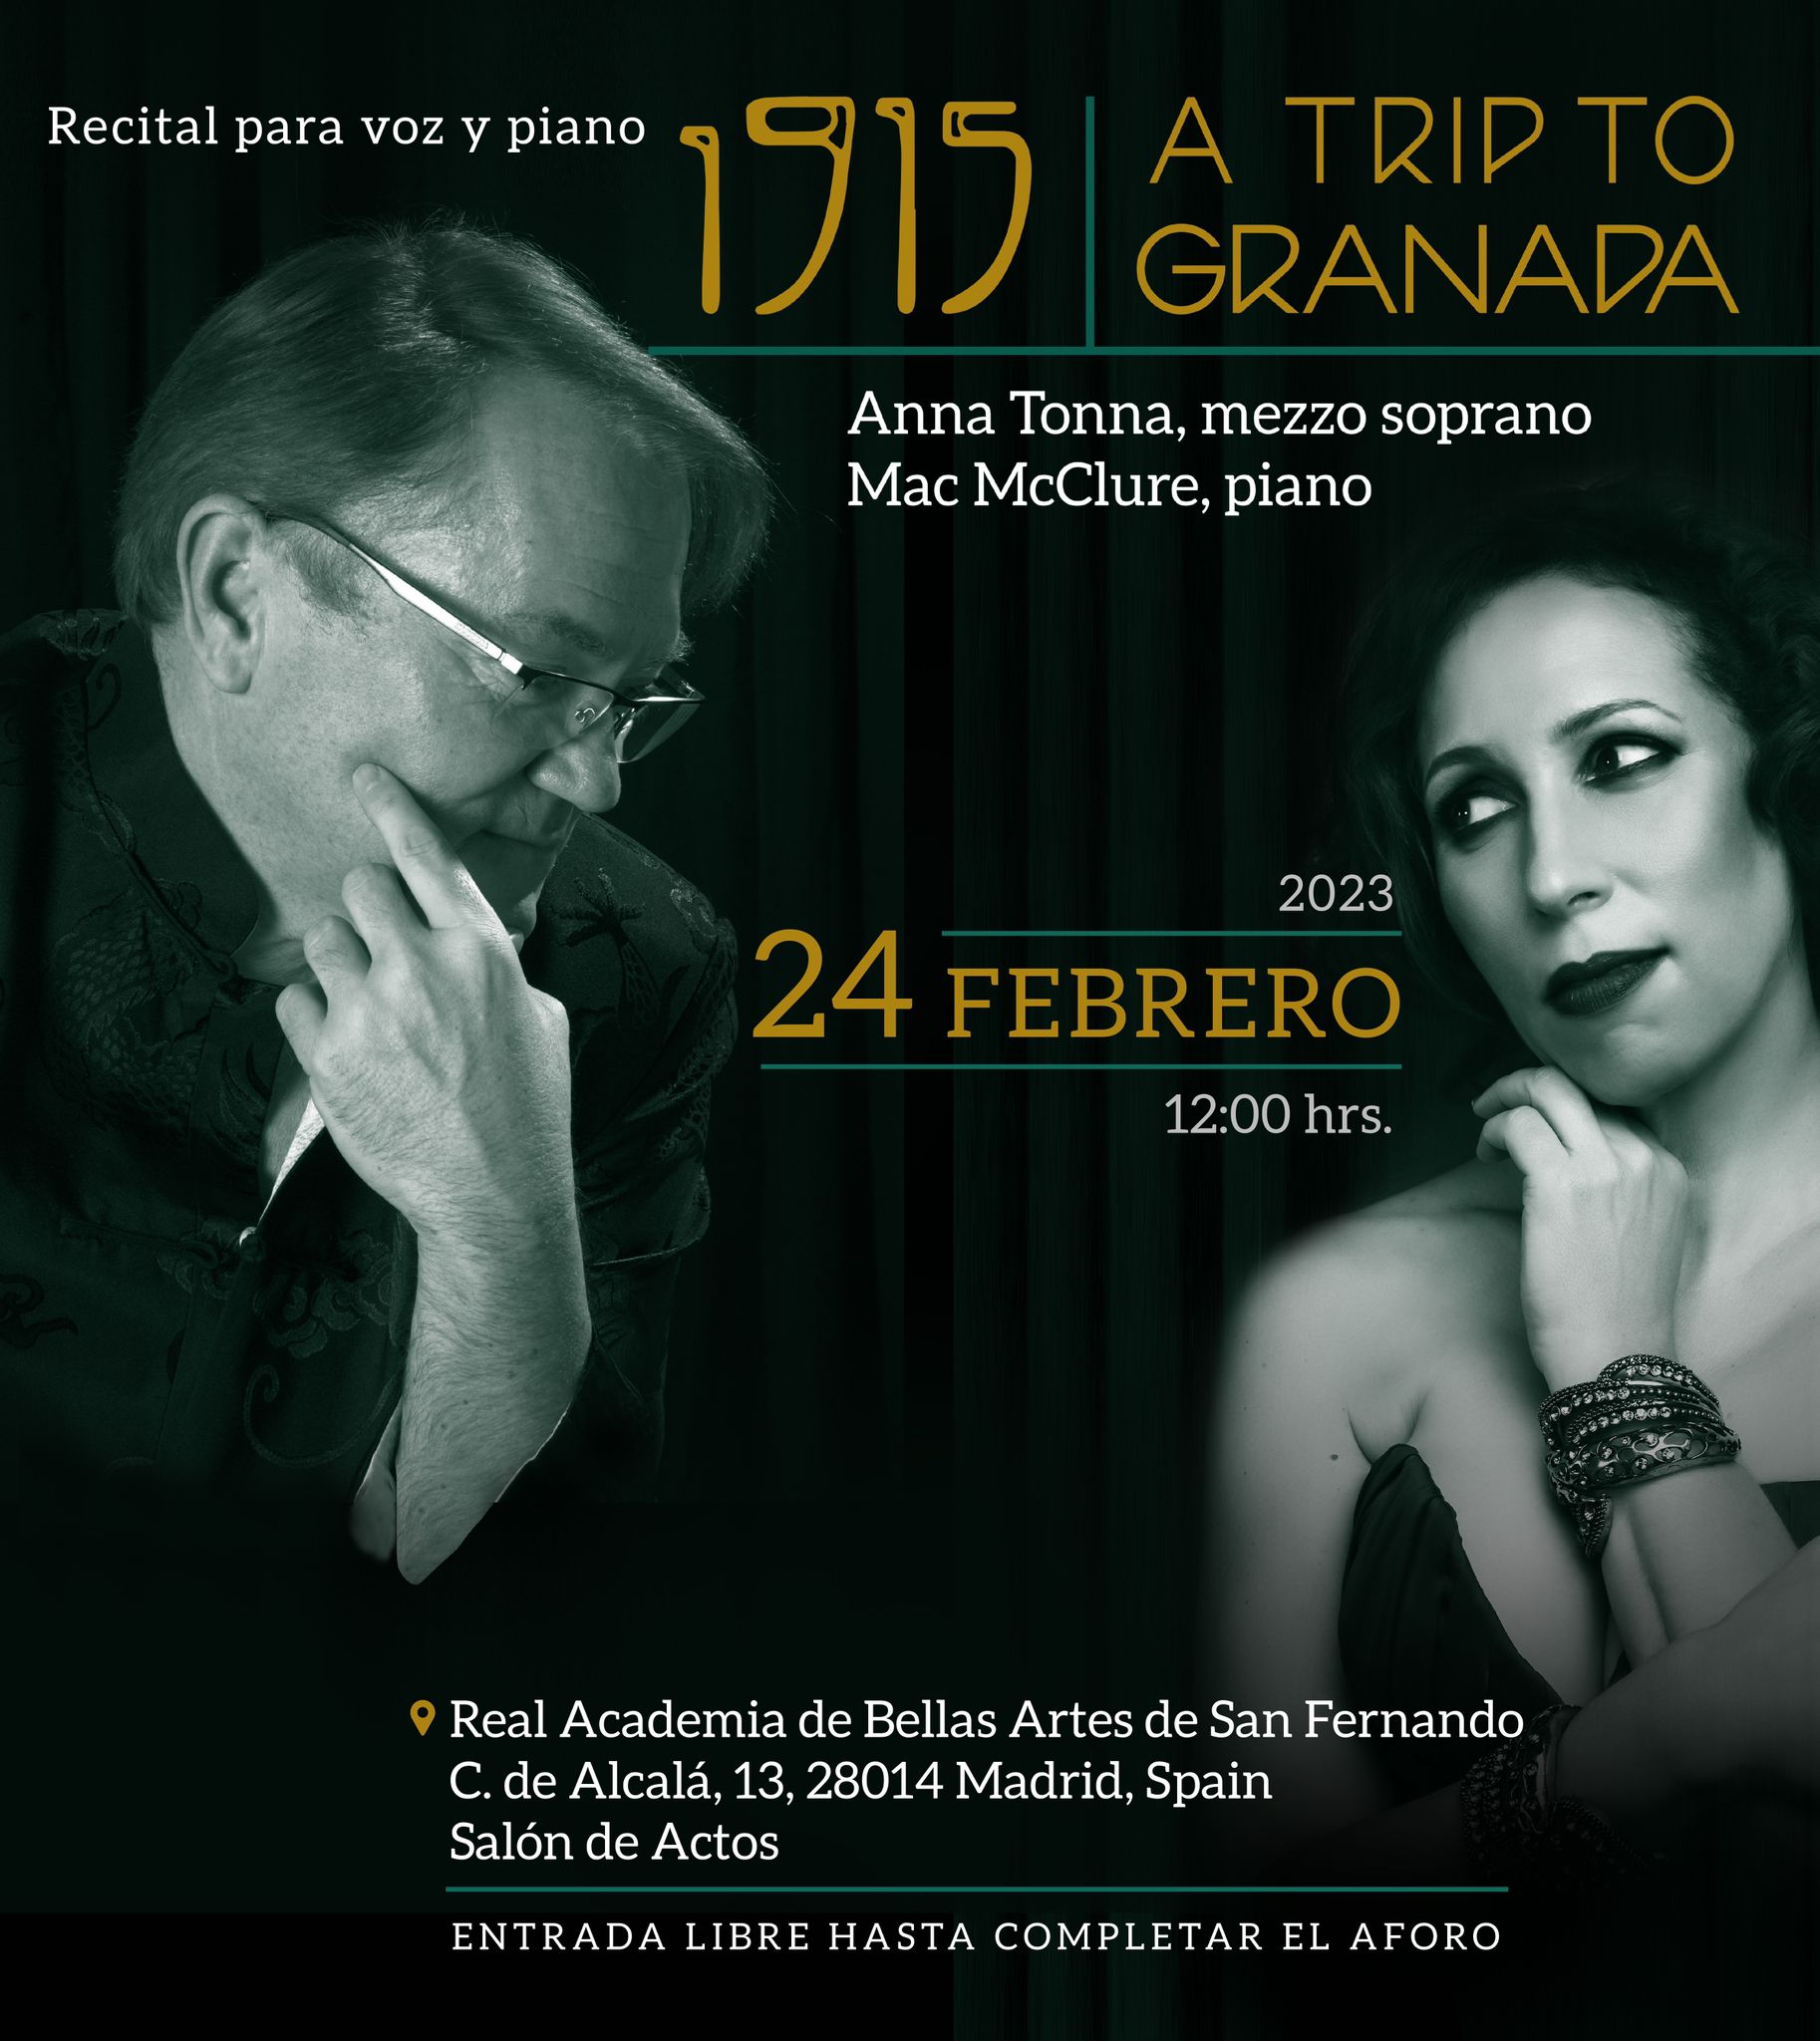 Cartel publicitario del recital en torno al CD "1915 A trip to Granada"